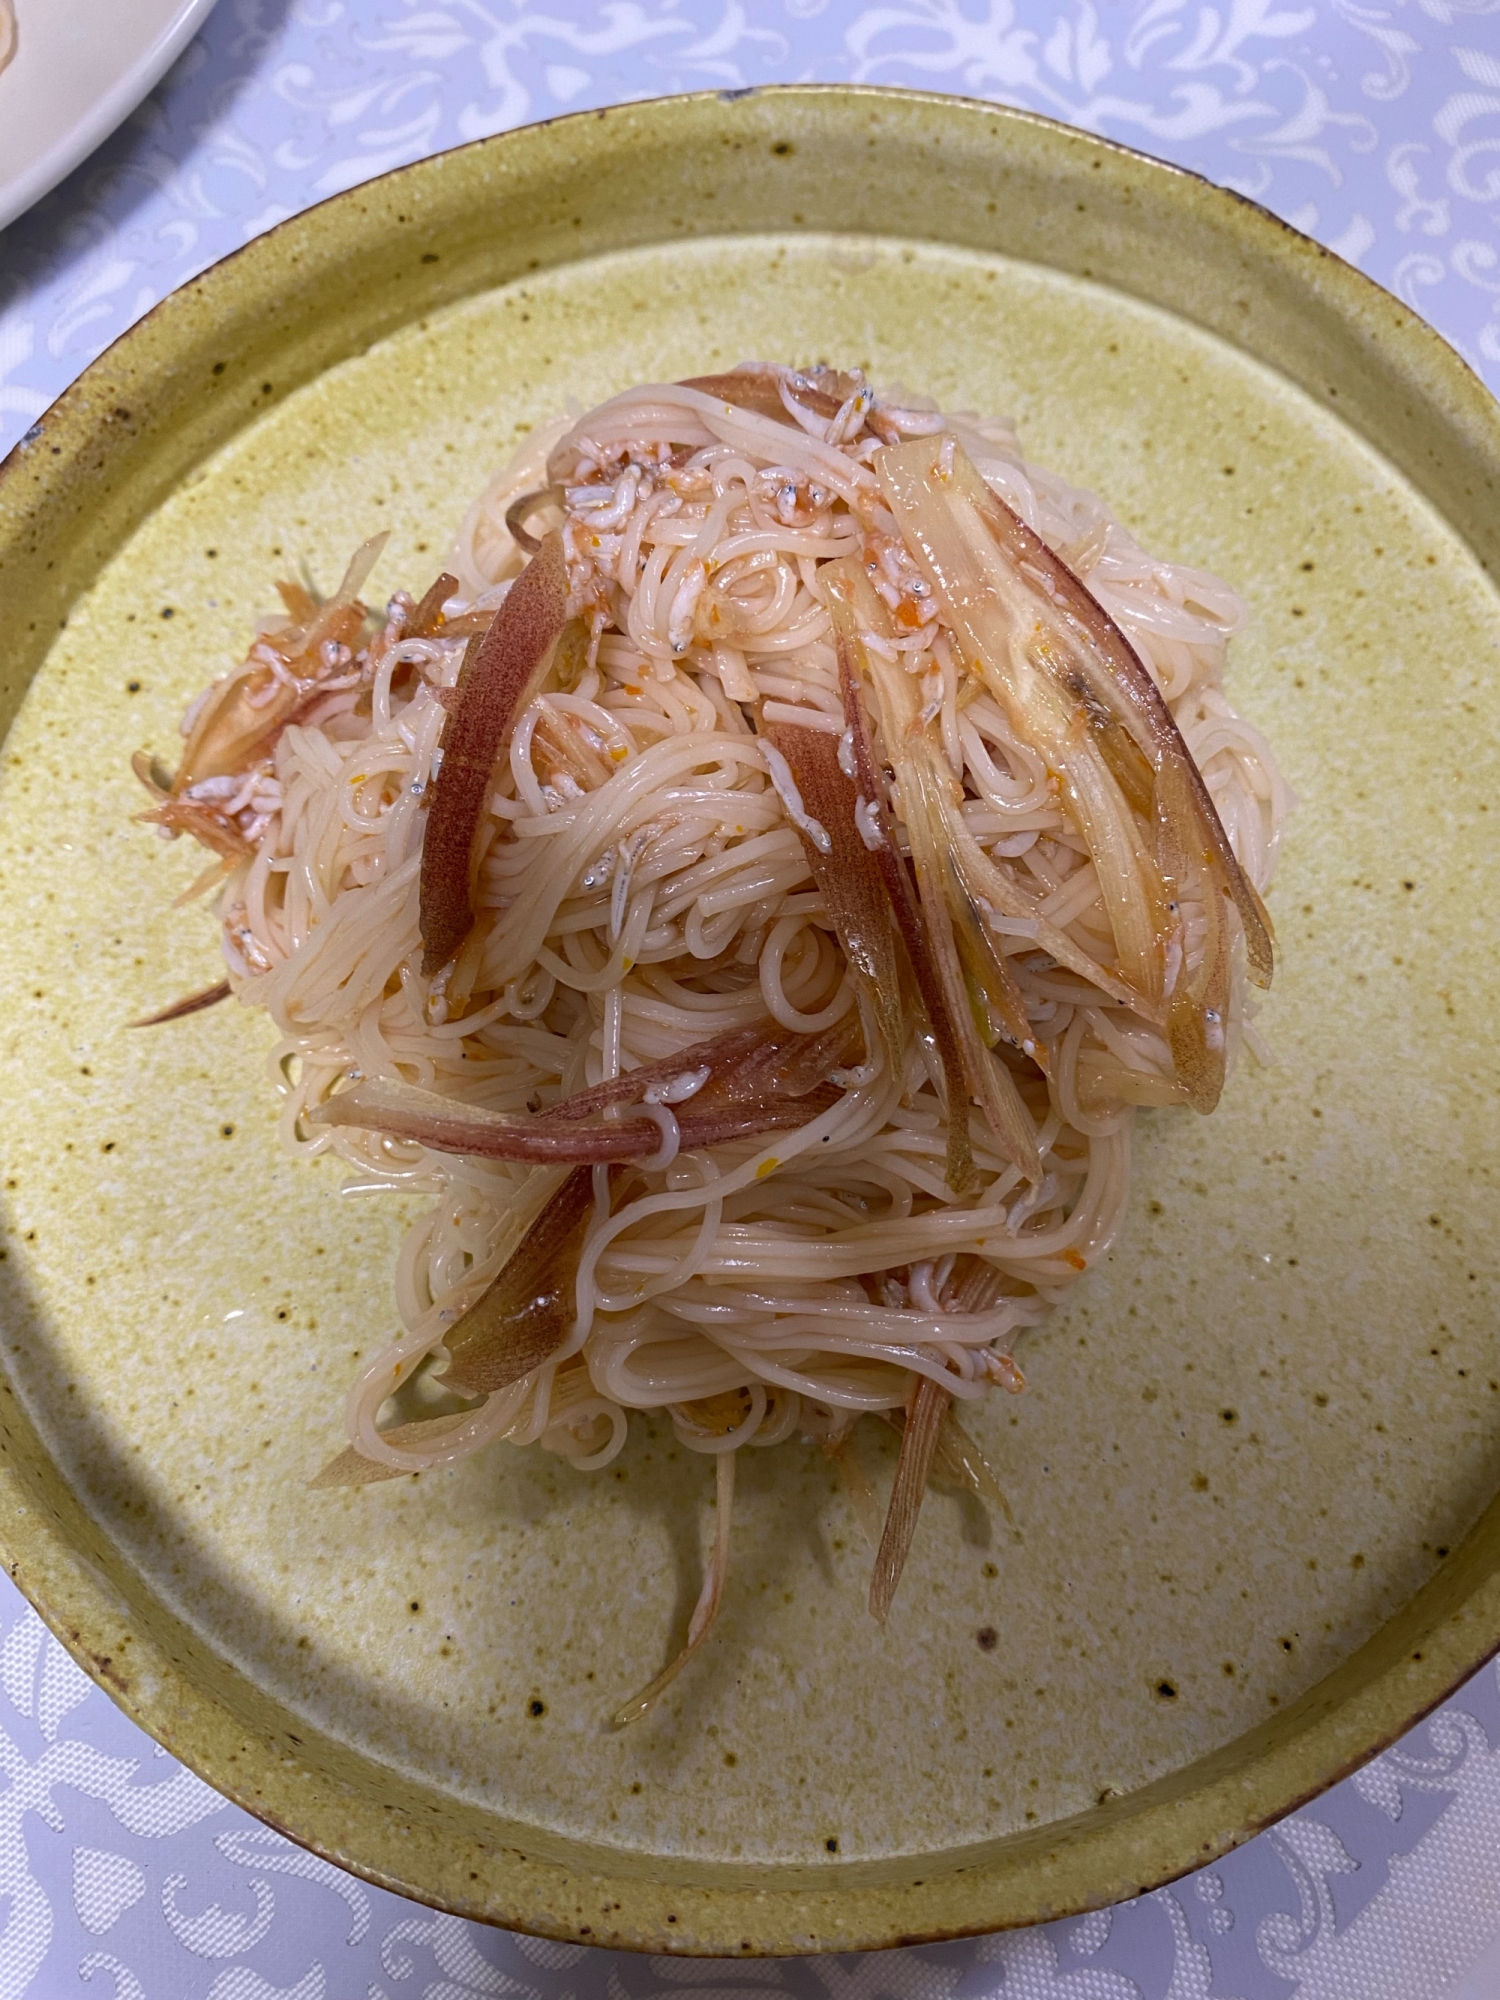 トマト梅風味の素麺カッペリーニ